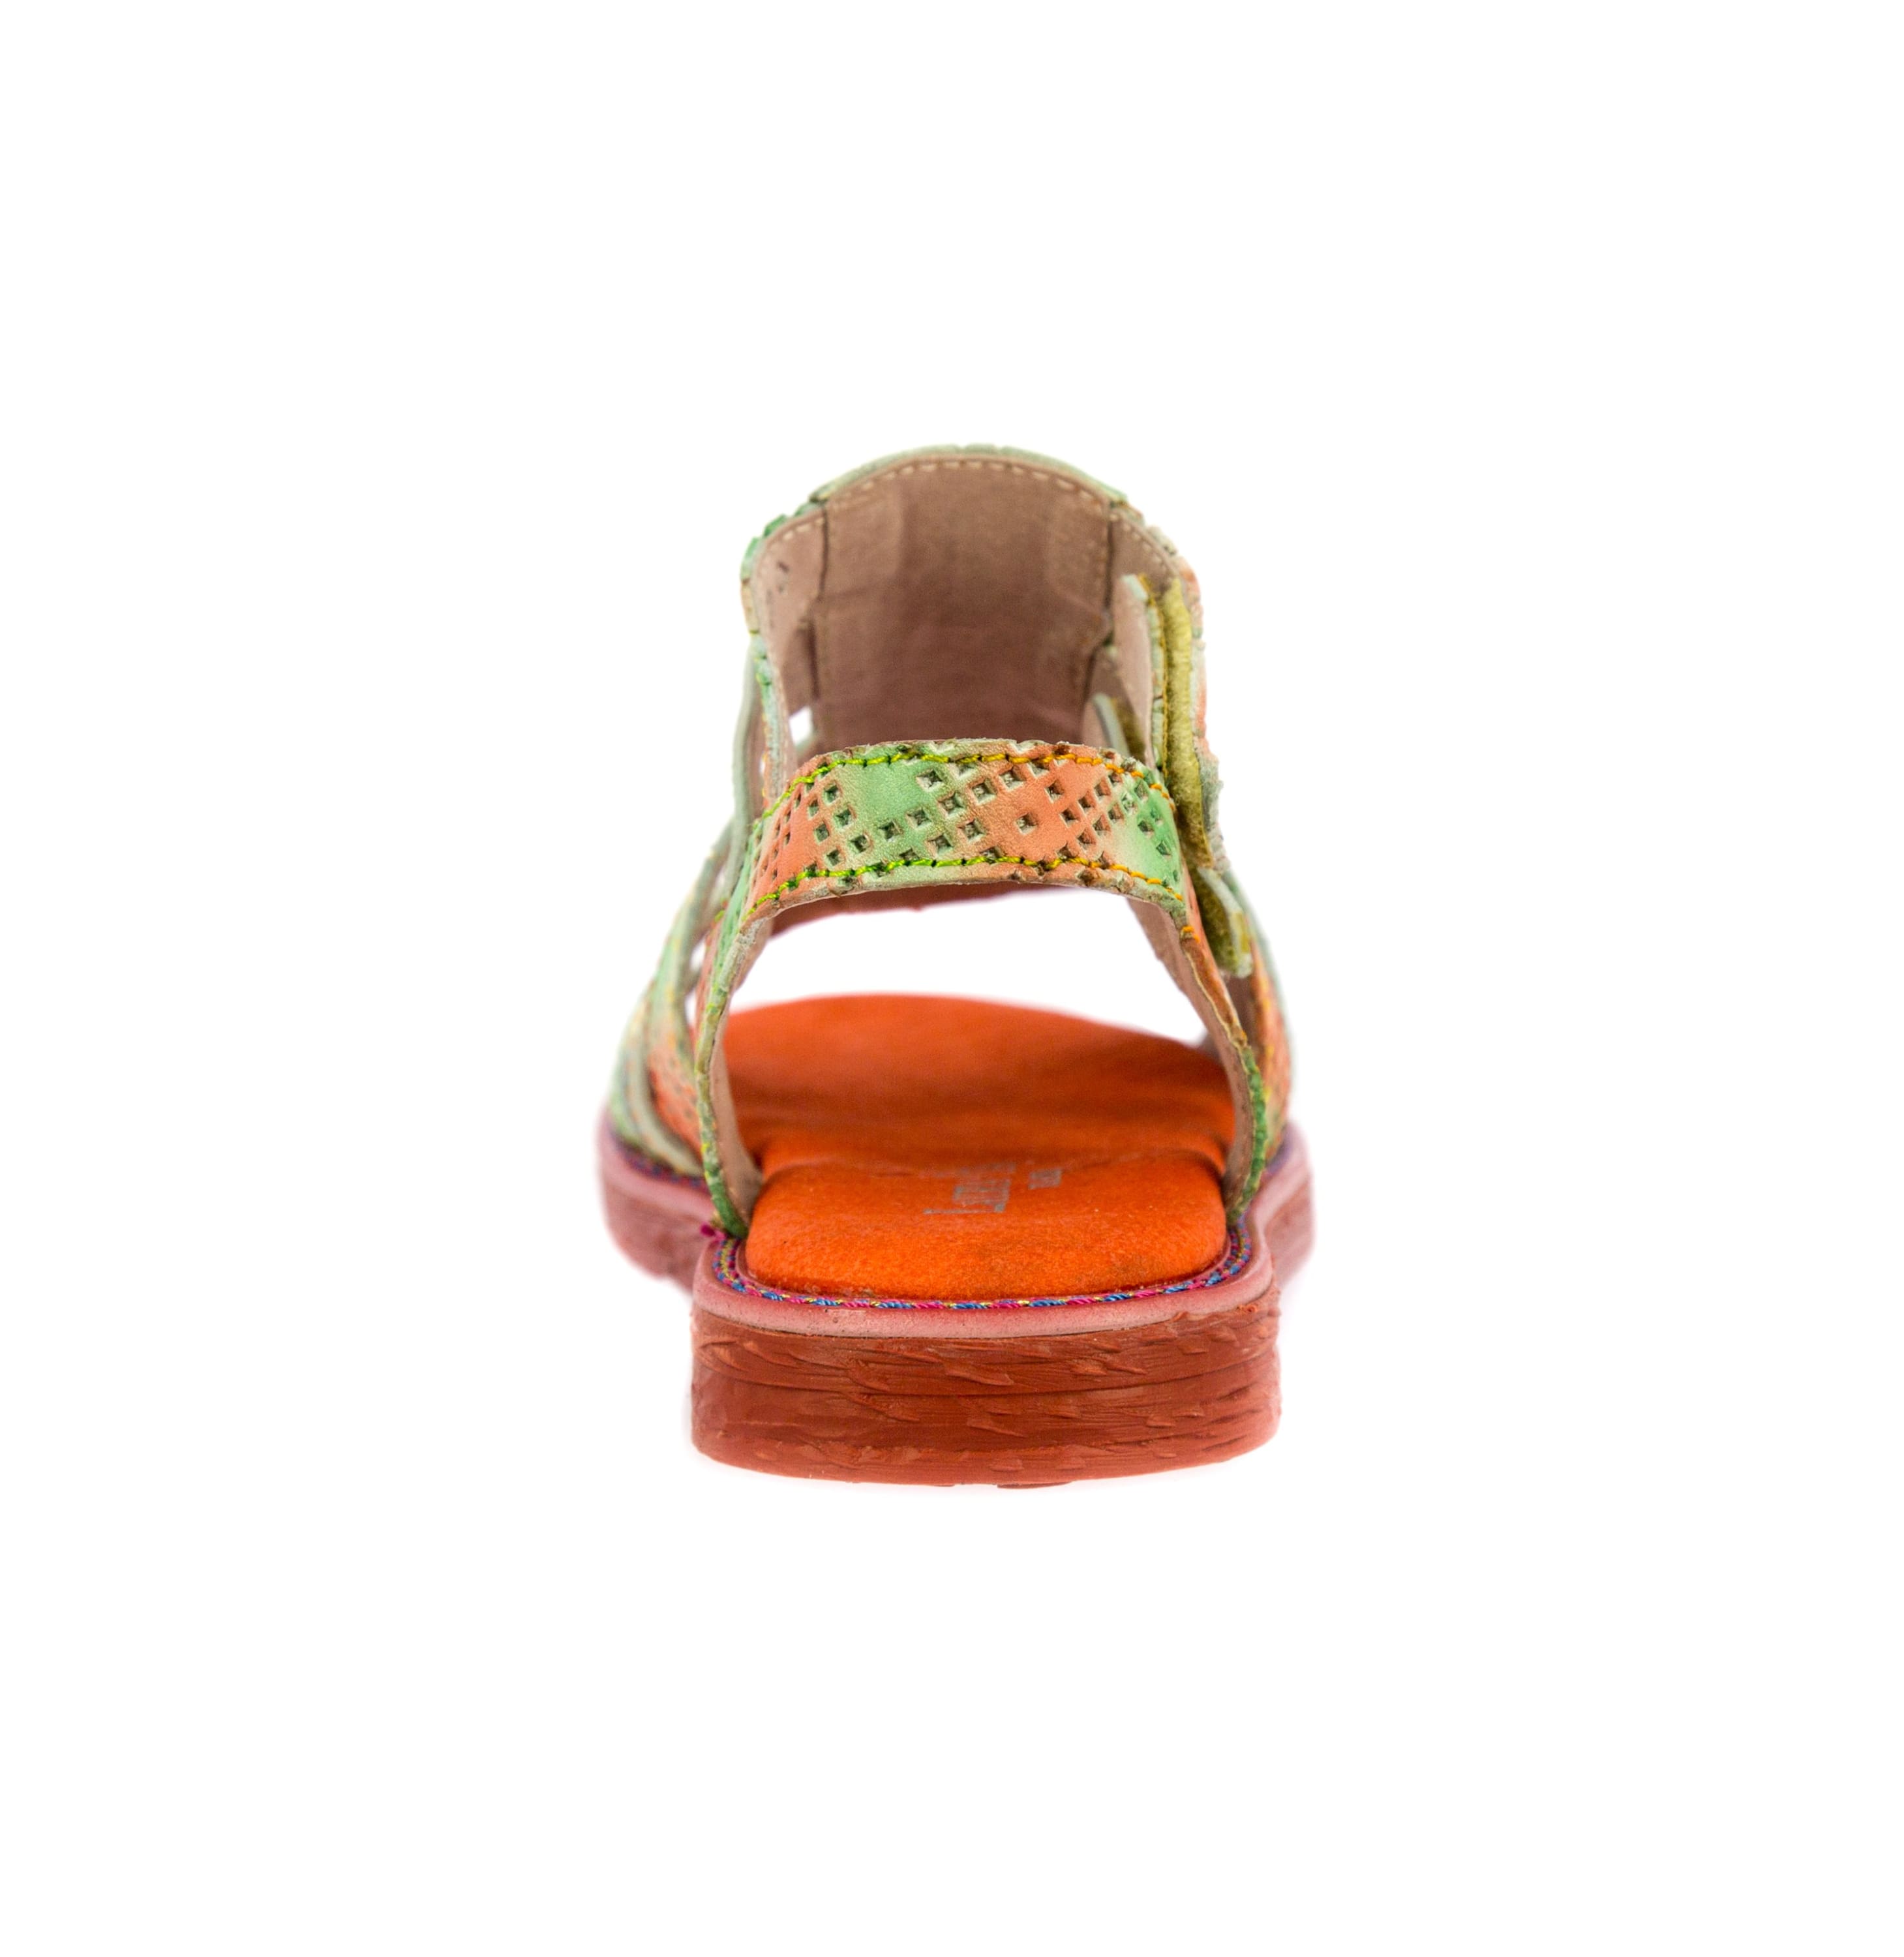 Schuh BRCOWNIEO51 - Sandale